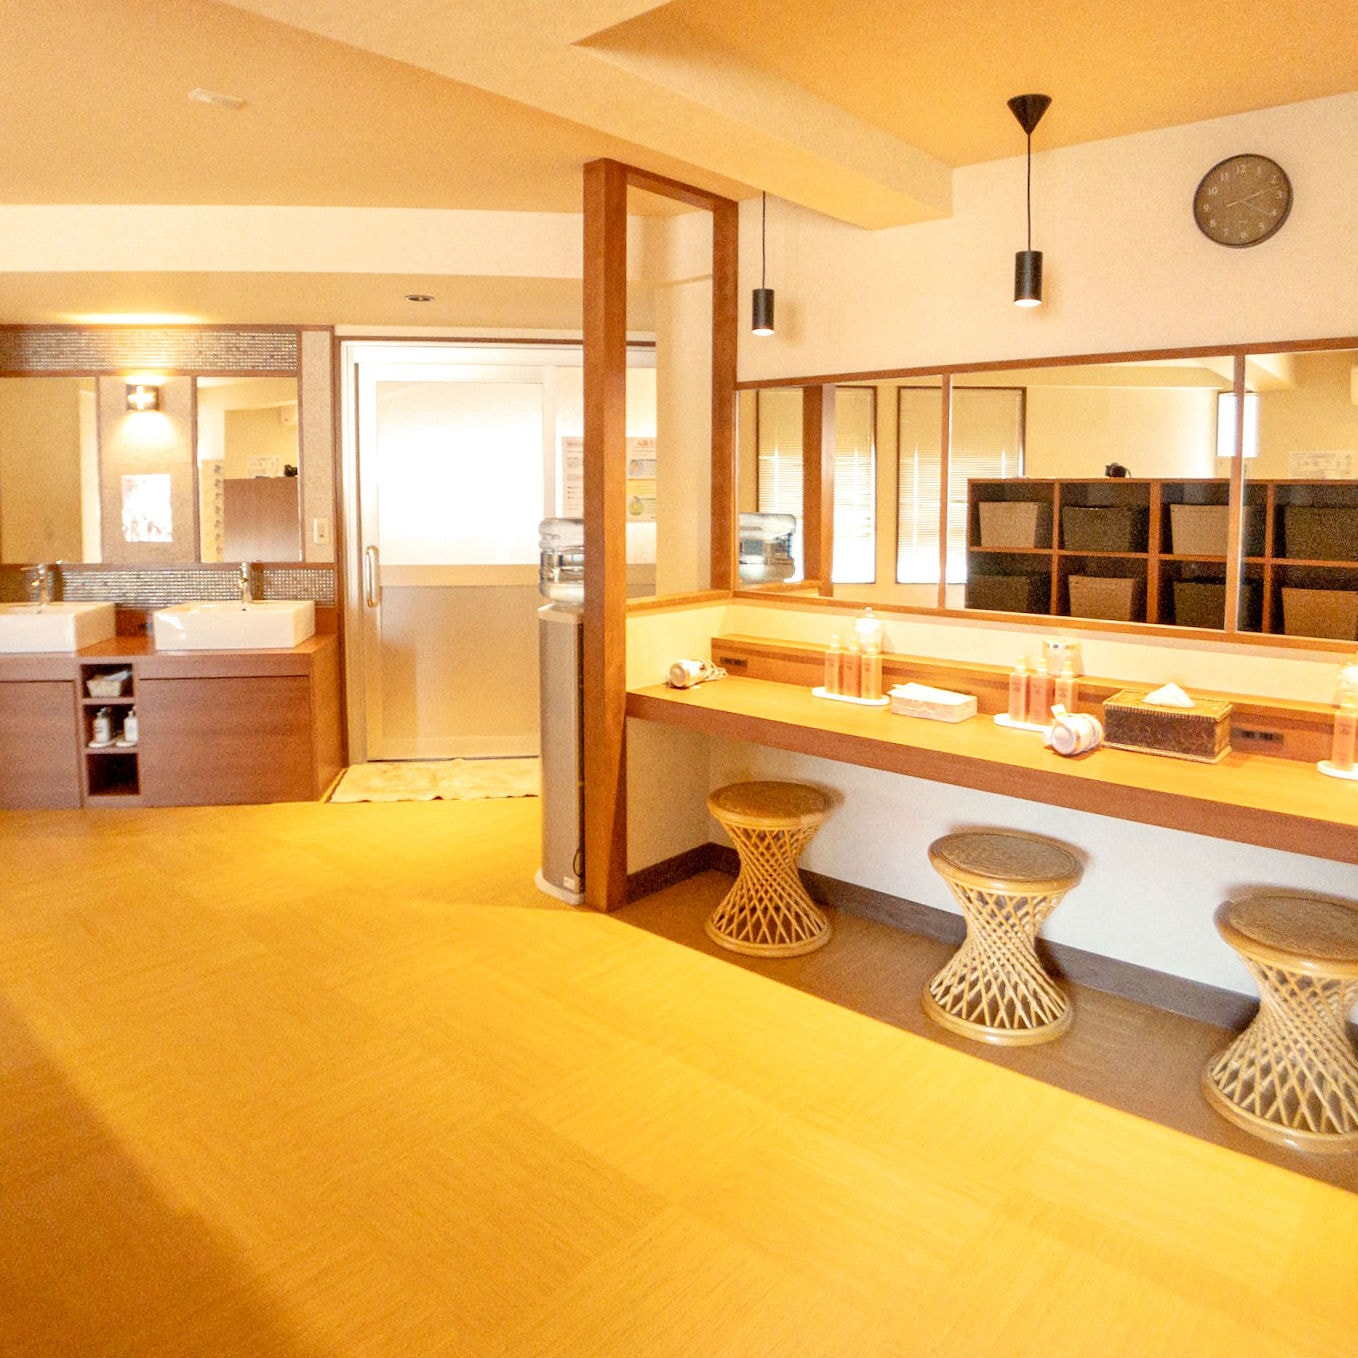 Hotel photo 44 of Atami Onsen Hotel Yume Iroha.